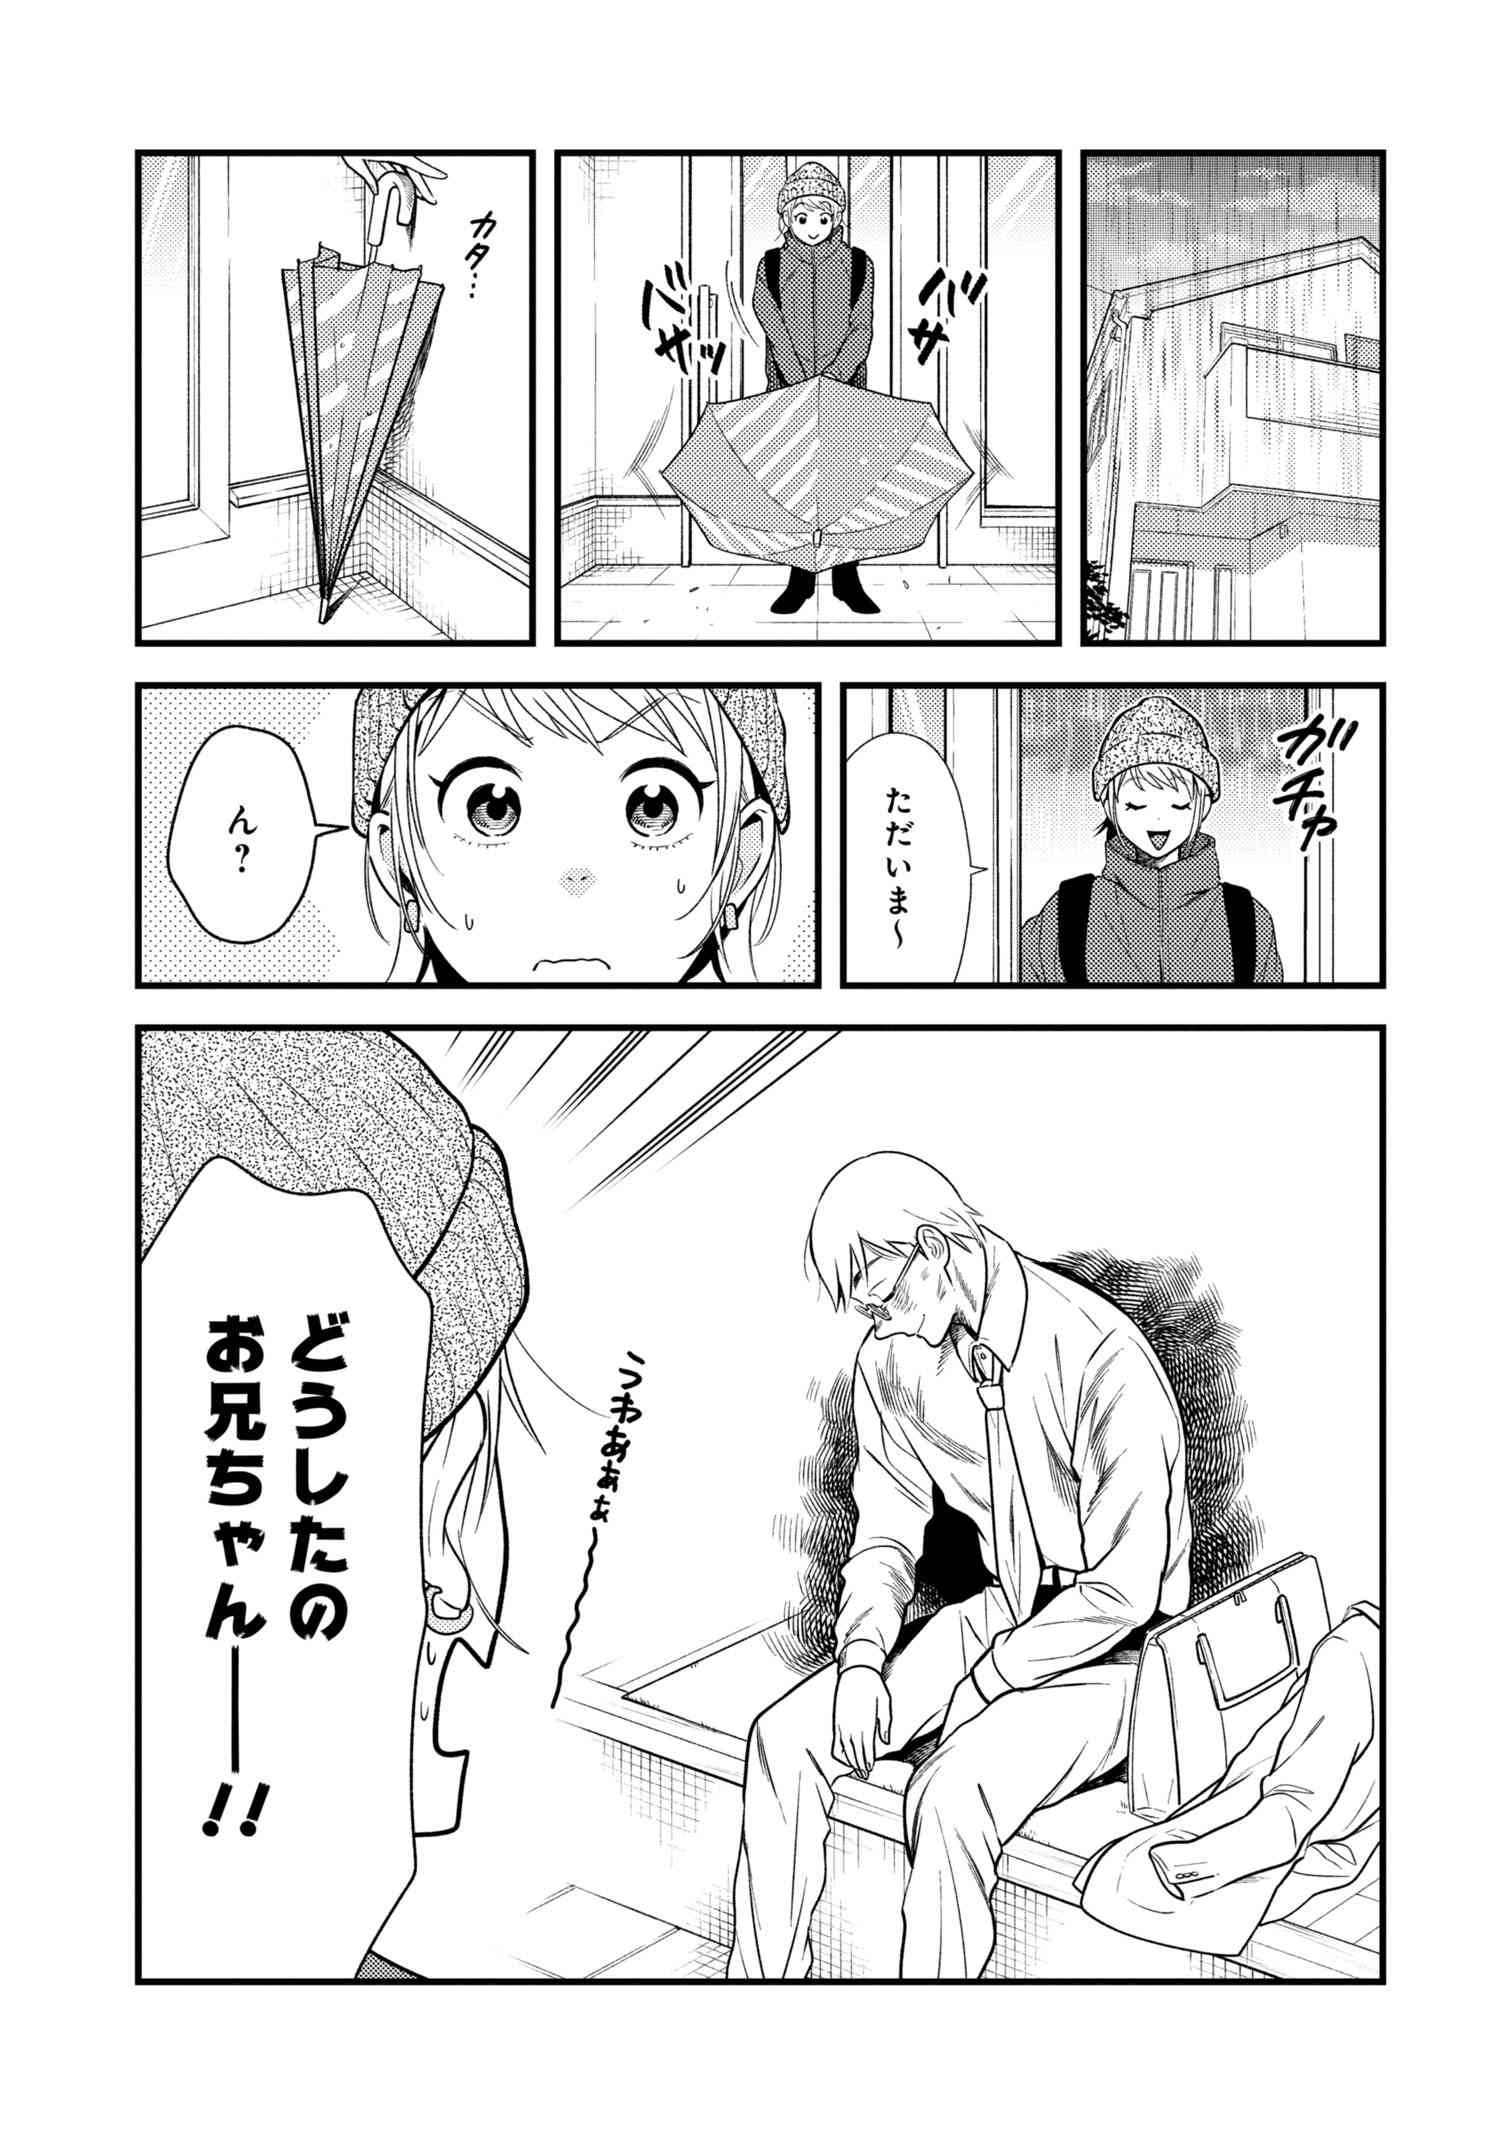 Fuku o Kiru Nara Konna Fuu ni - 服を着るならこんなふうに - Chapter 50 - Page 3